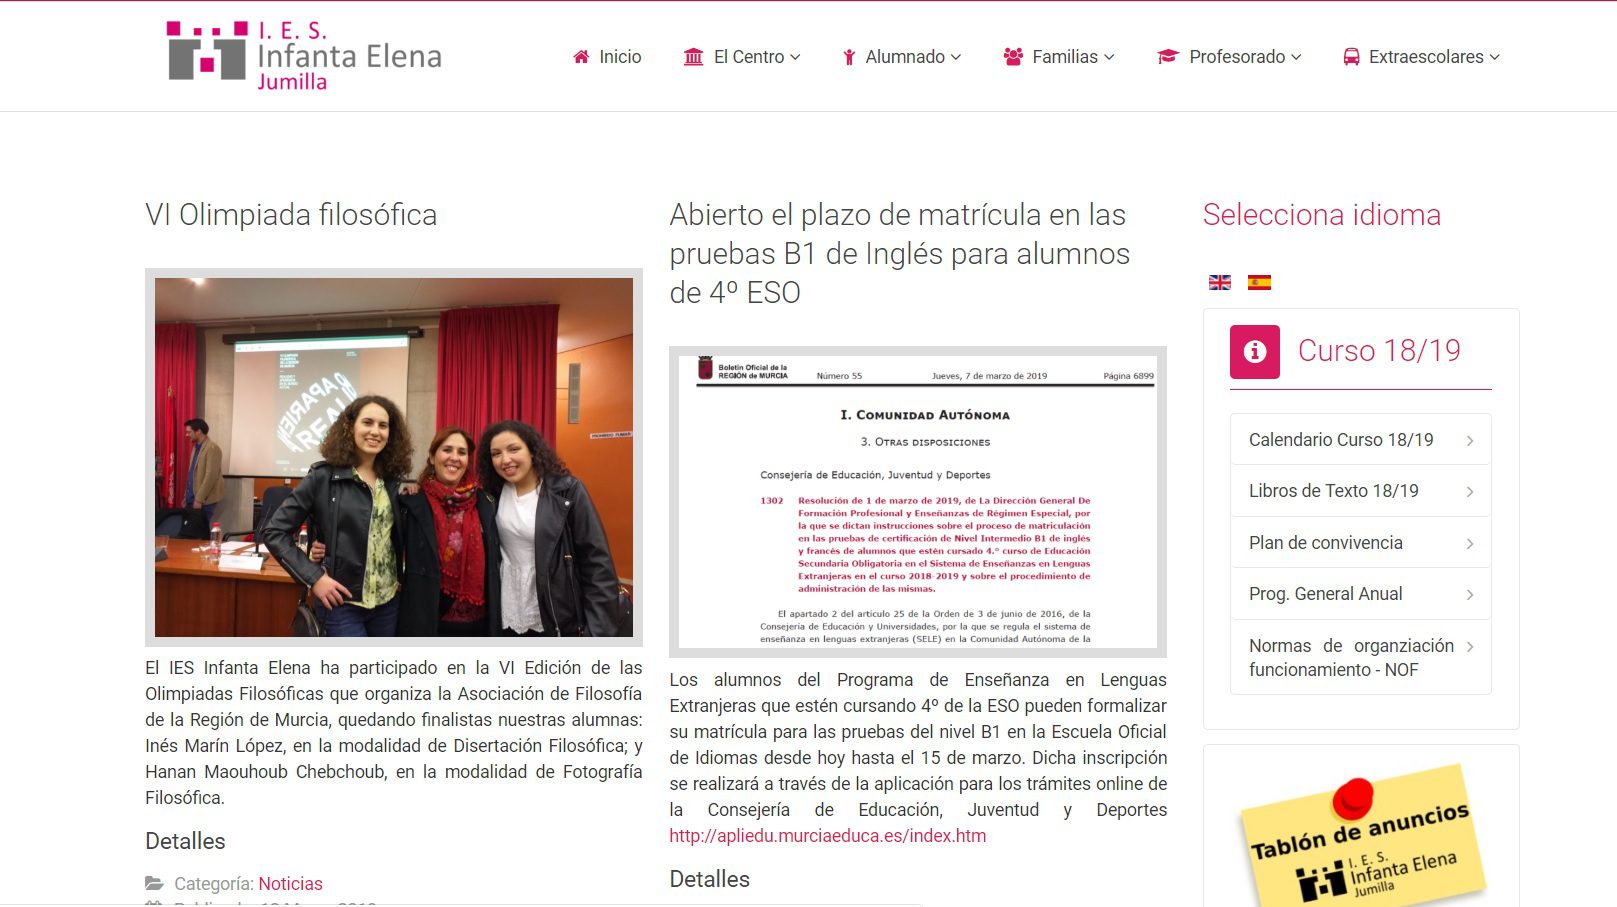 La web del IES Infanta Elena es finalista en los premios web regionales